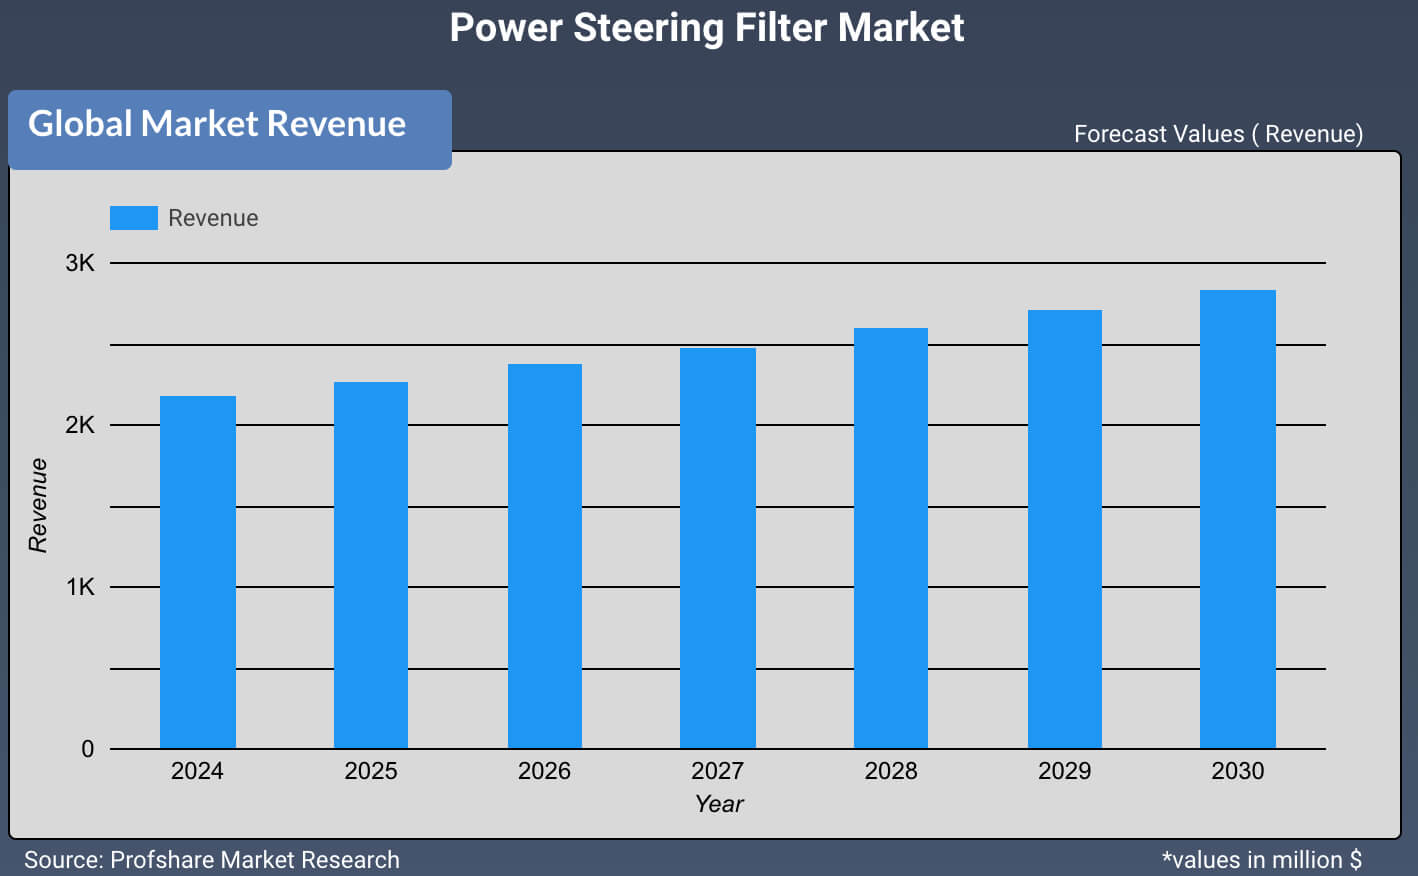 Power Steering Filter Market